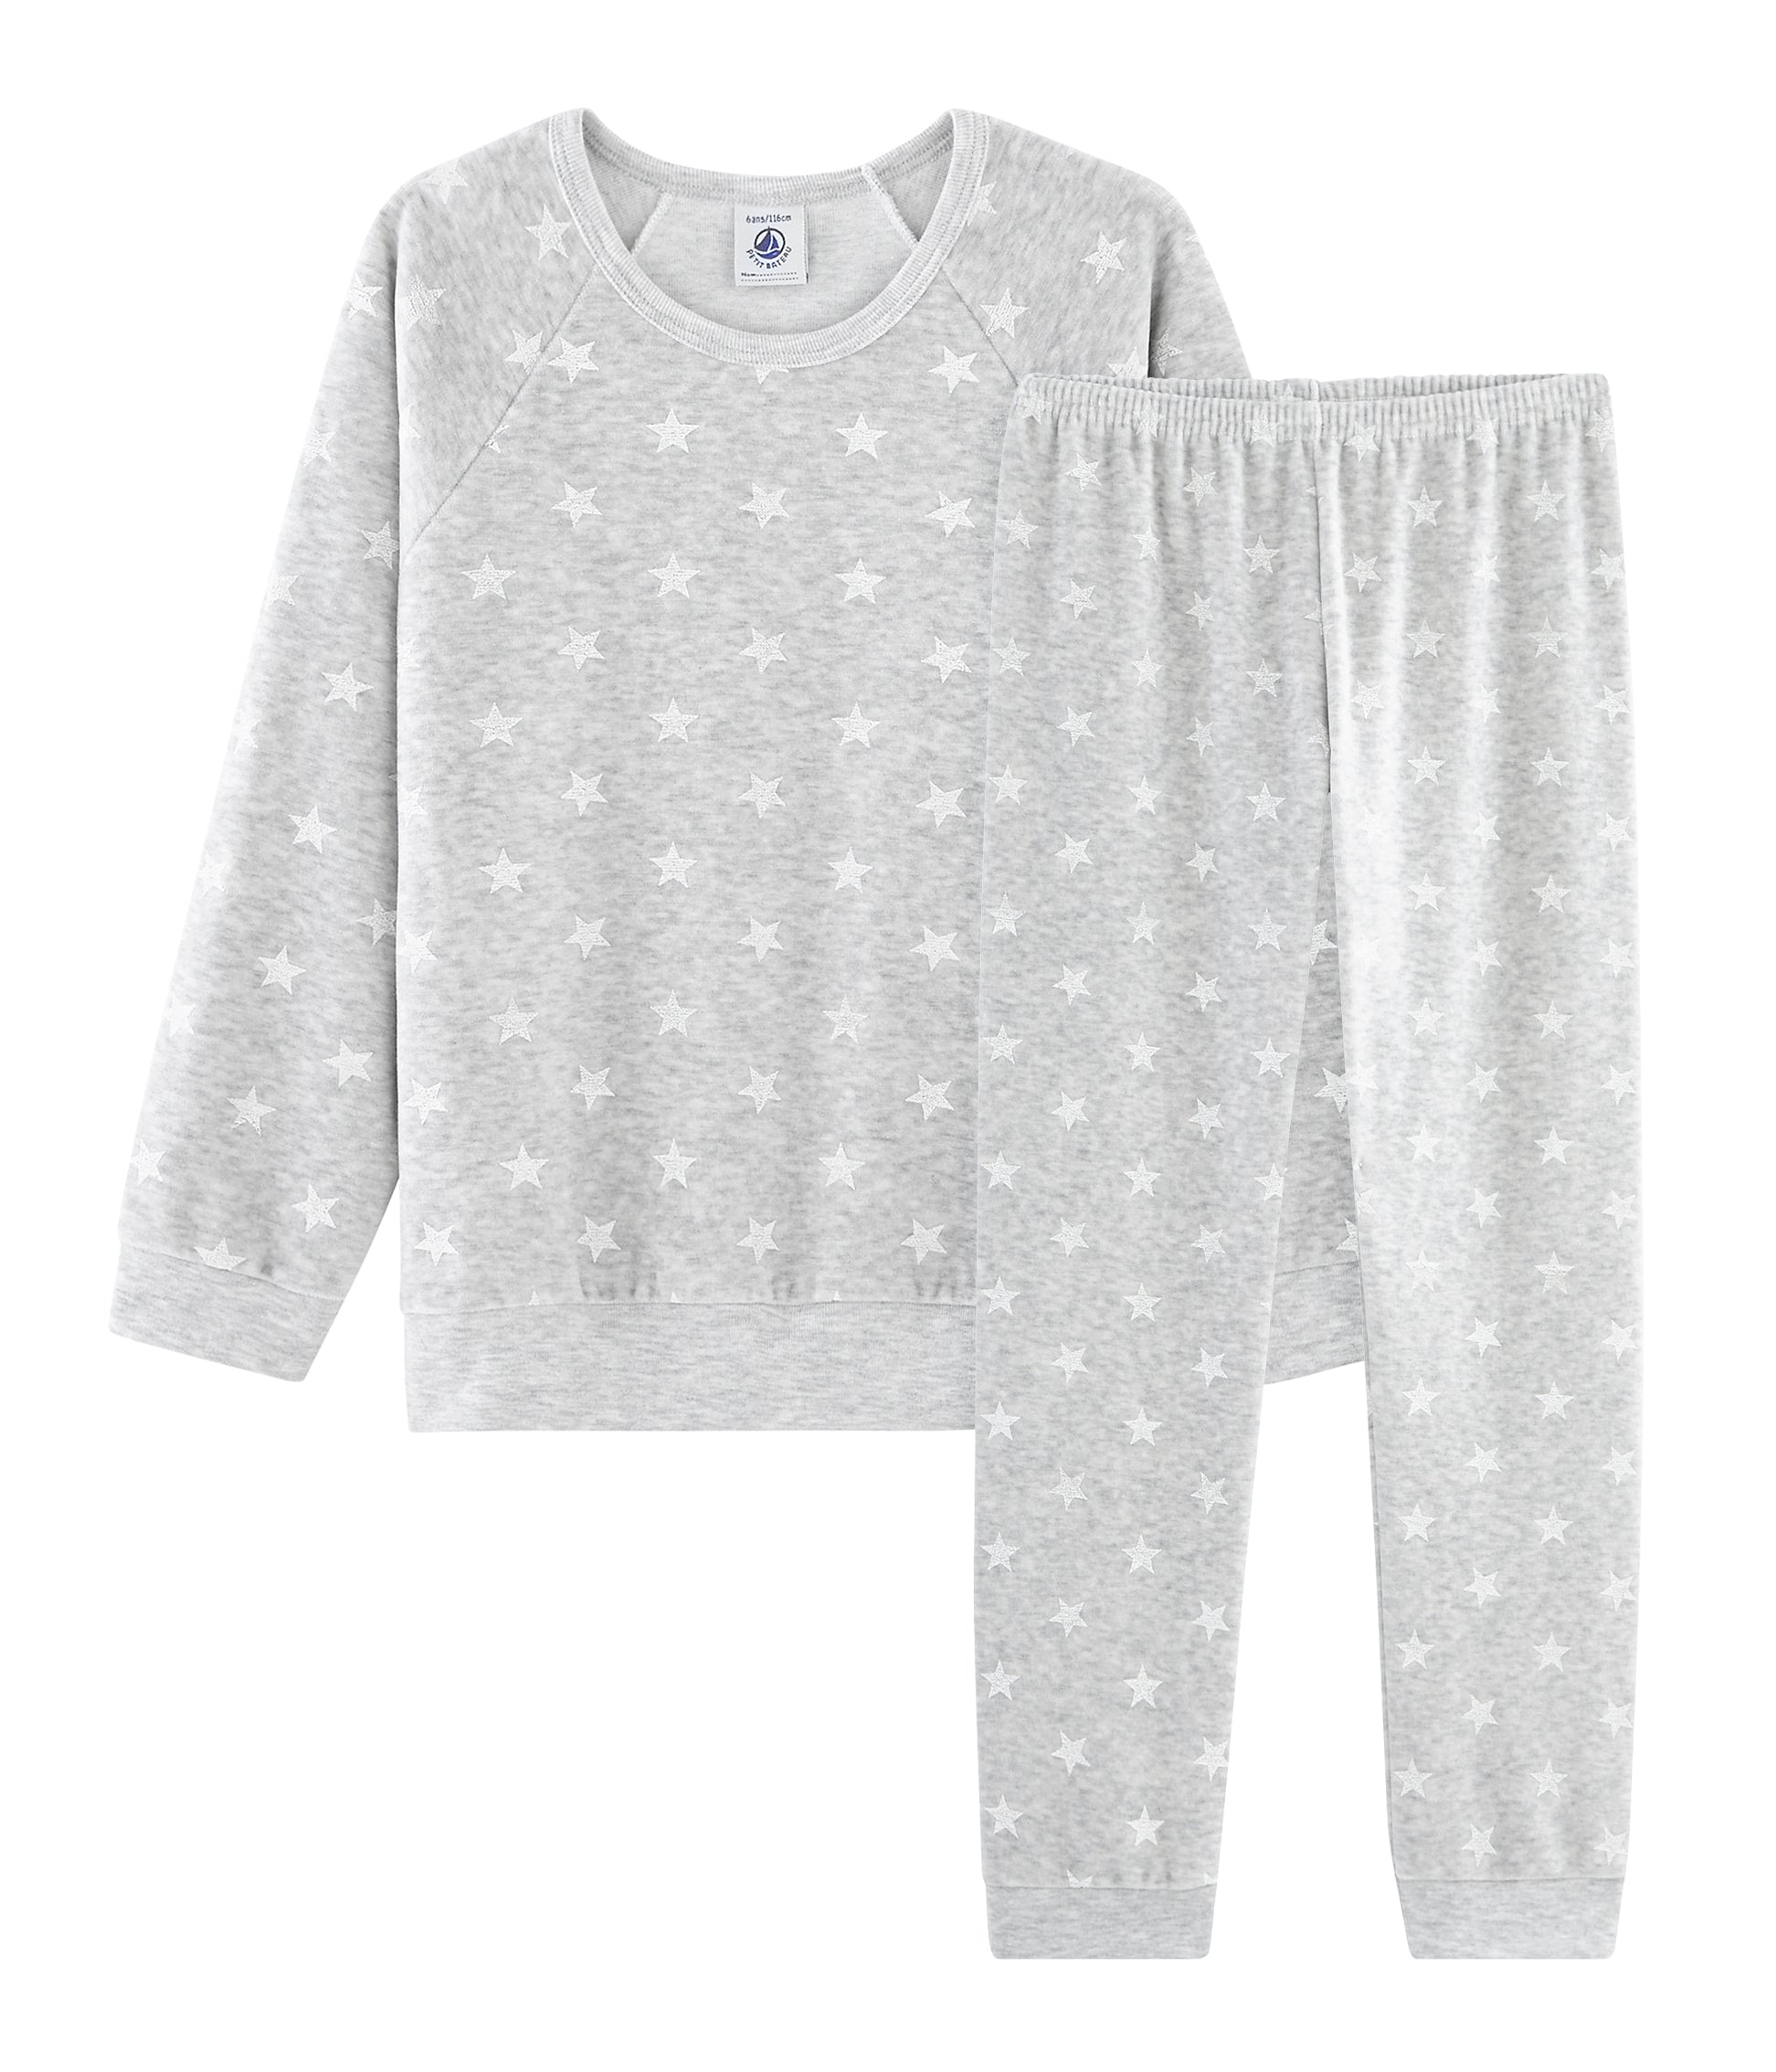 Girls Grey Star Cotton Nightwear Set